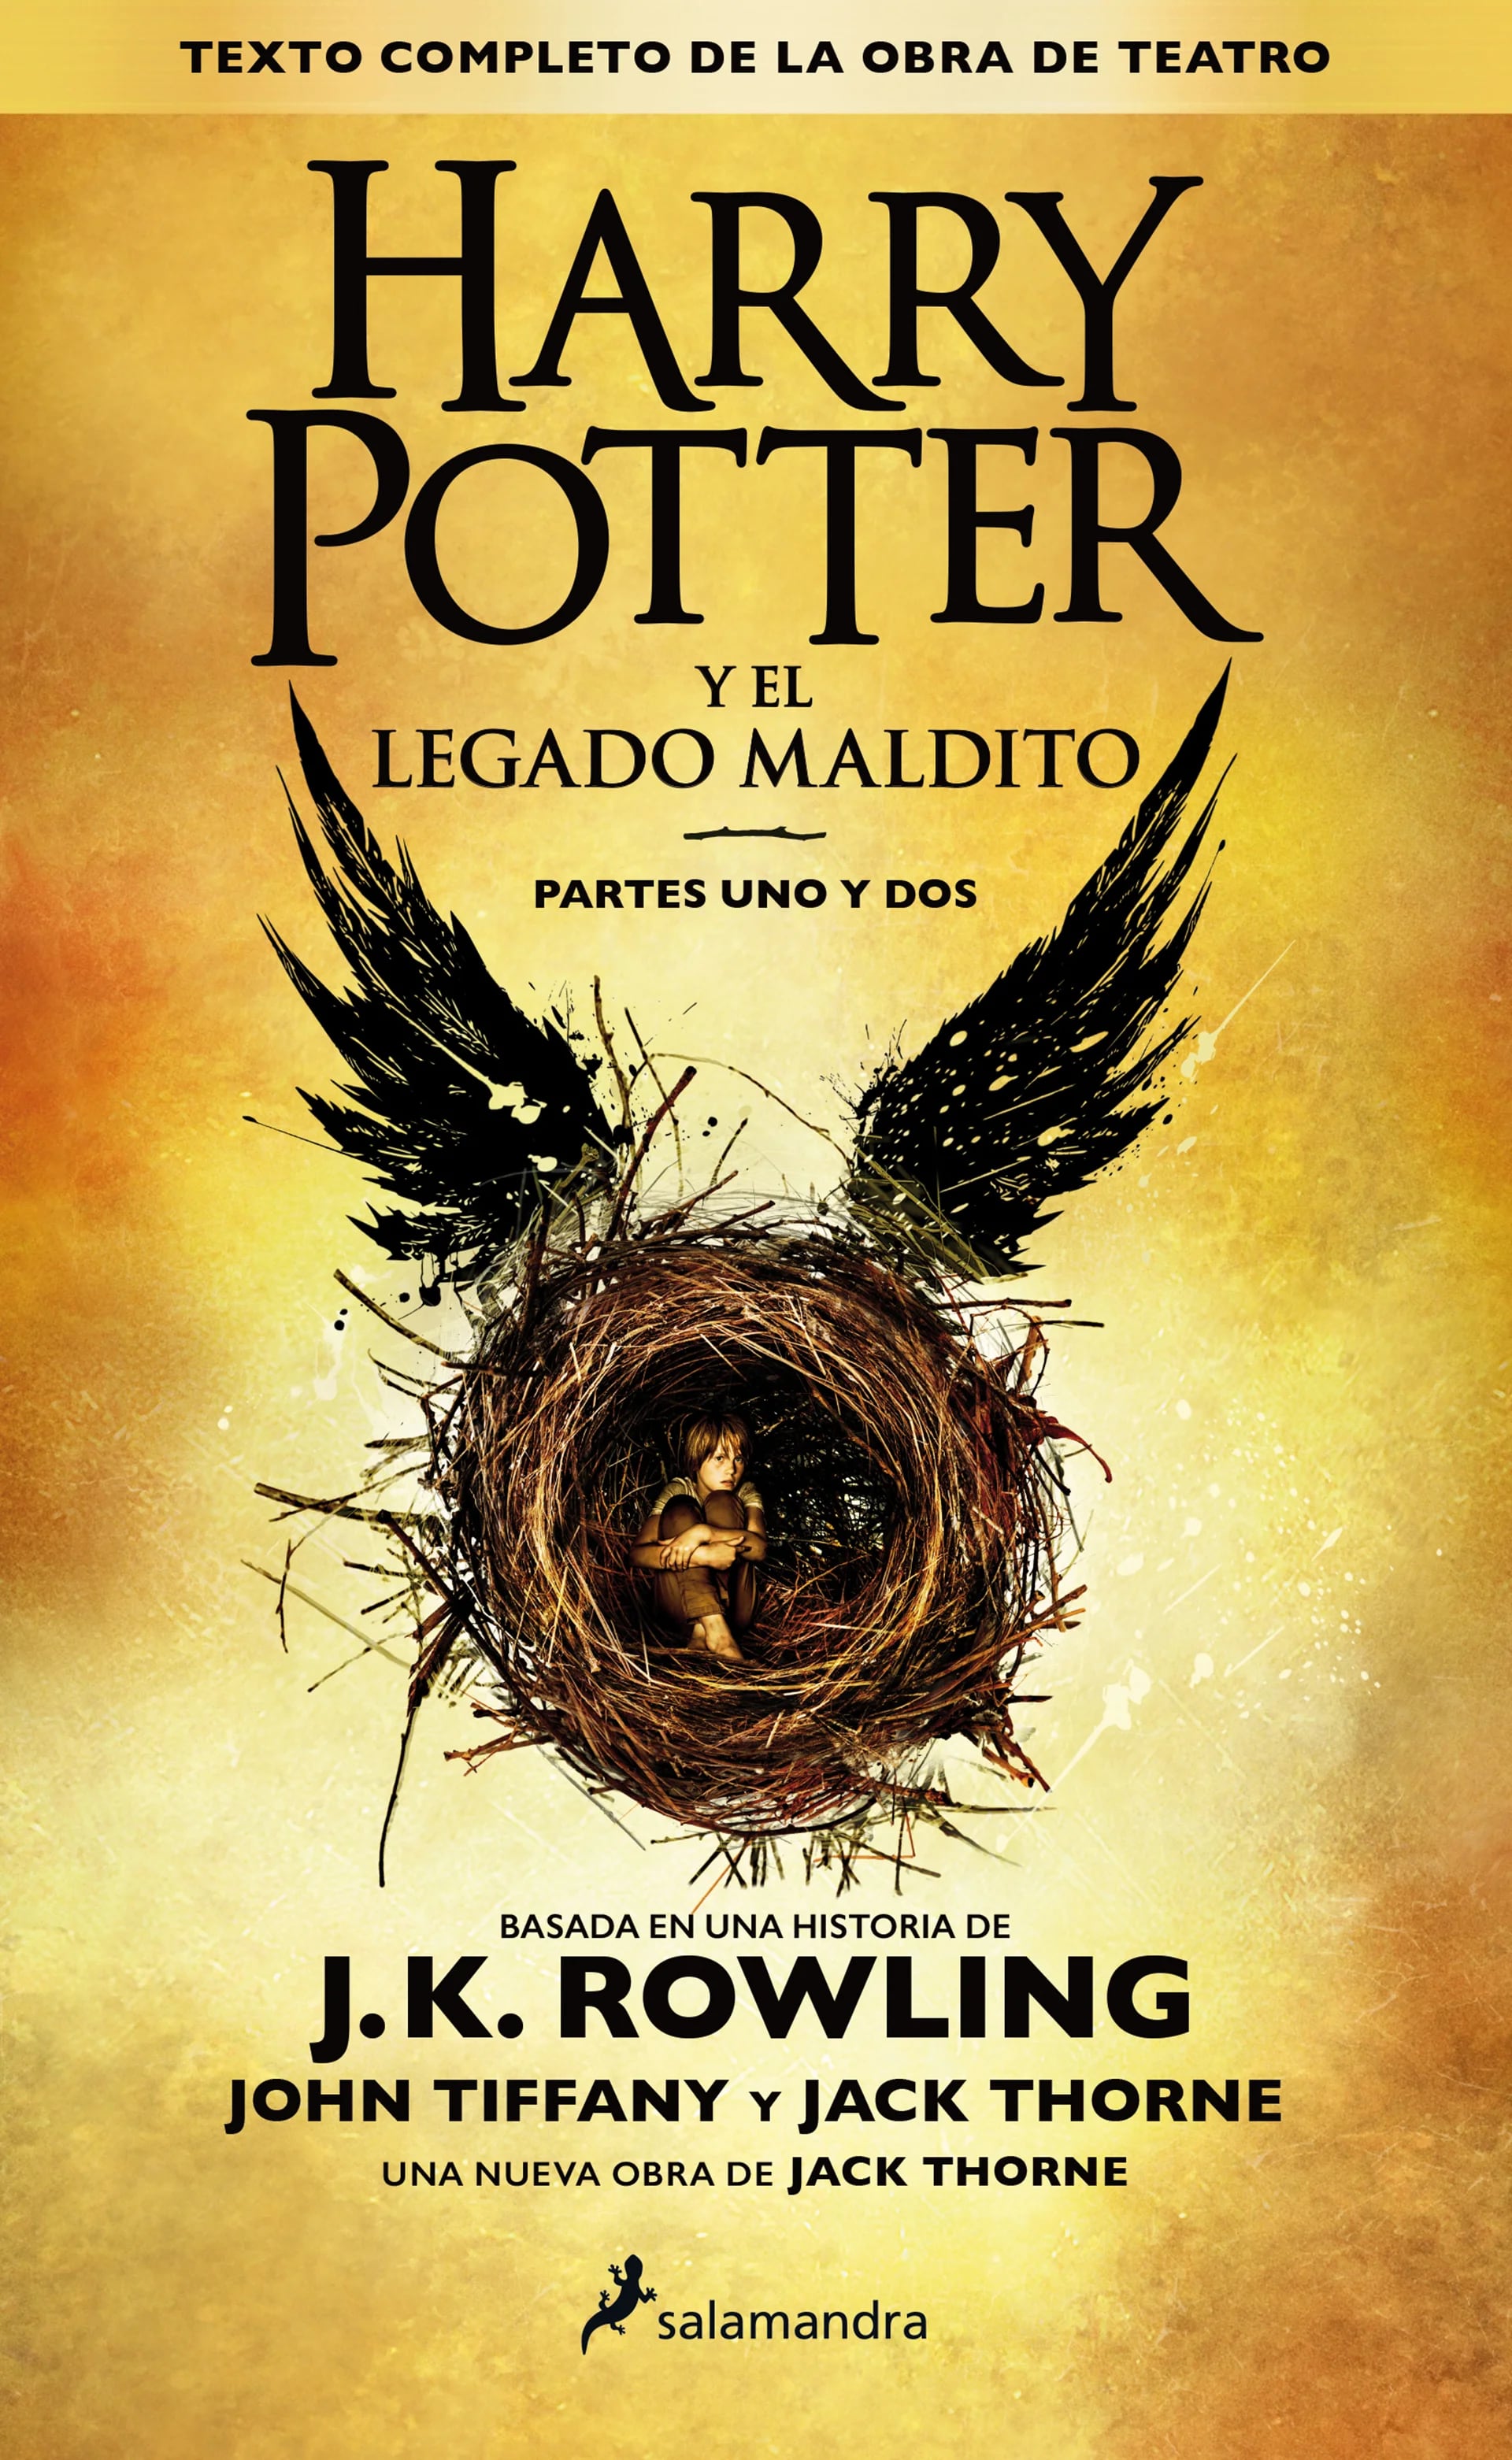 Harry Potter y el legado maldito estará disponible en español recién en septiembre